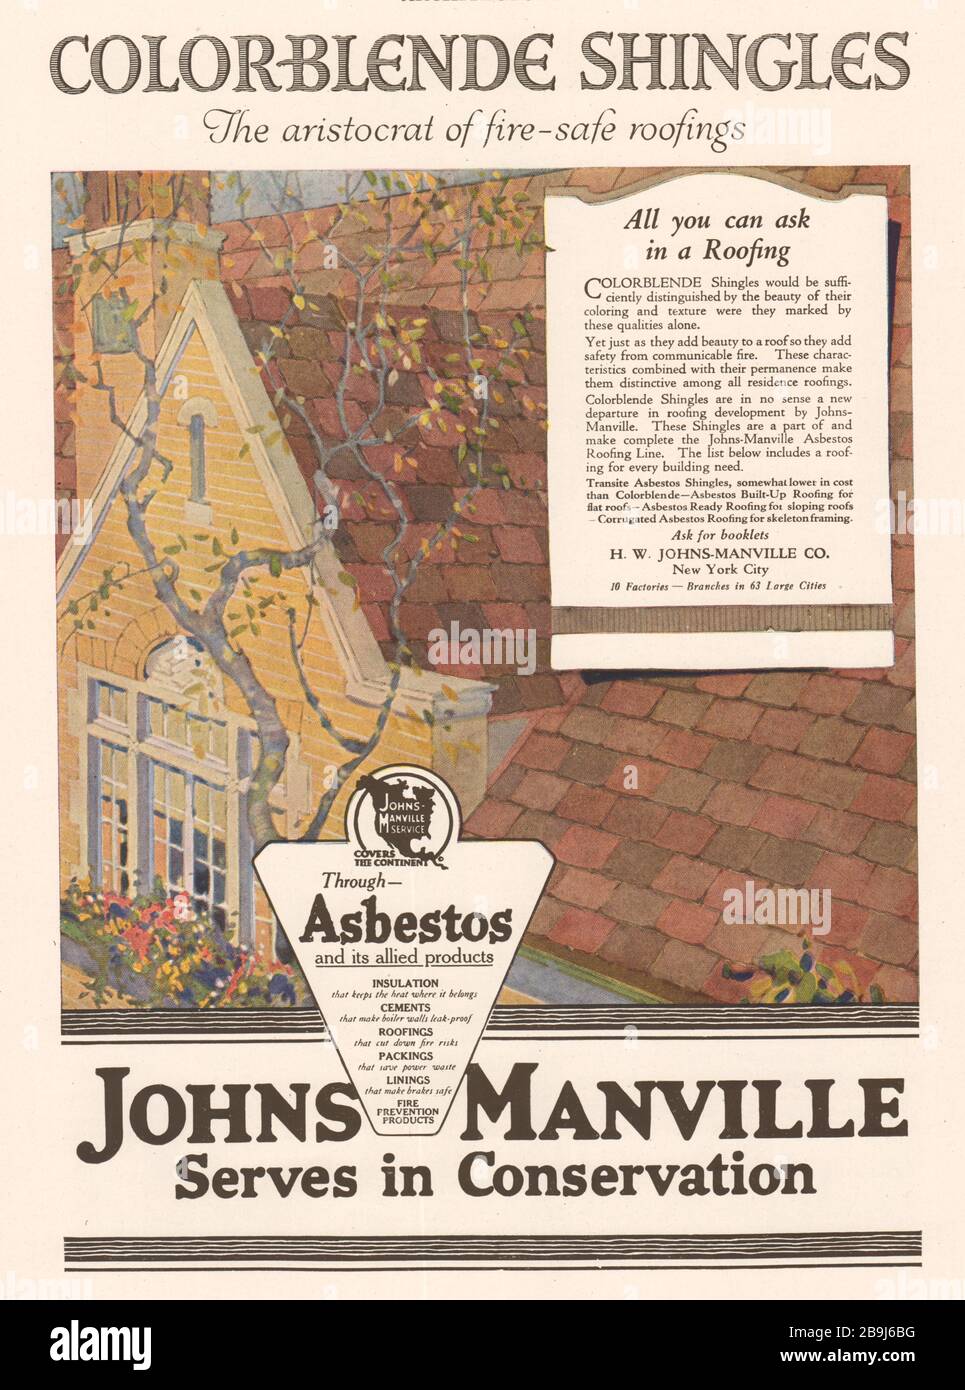 Farbliche Schindeln, feuersichere Dacheindeckungen. H.W. Johns-Manville Co., New York City, 10 Fabriken - Niederlassungen in 63 Großstädten (1919) Stockfoto